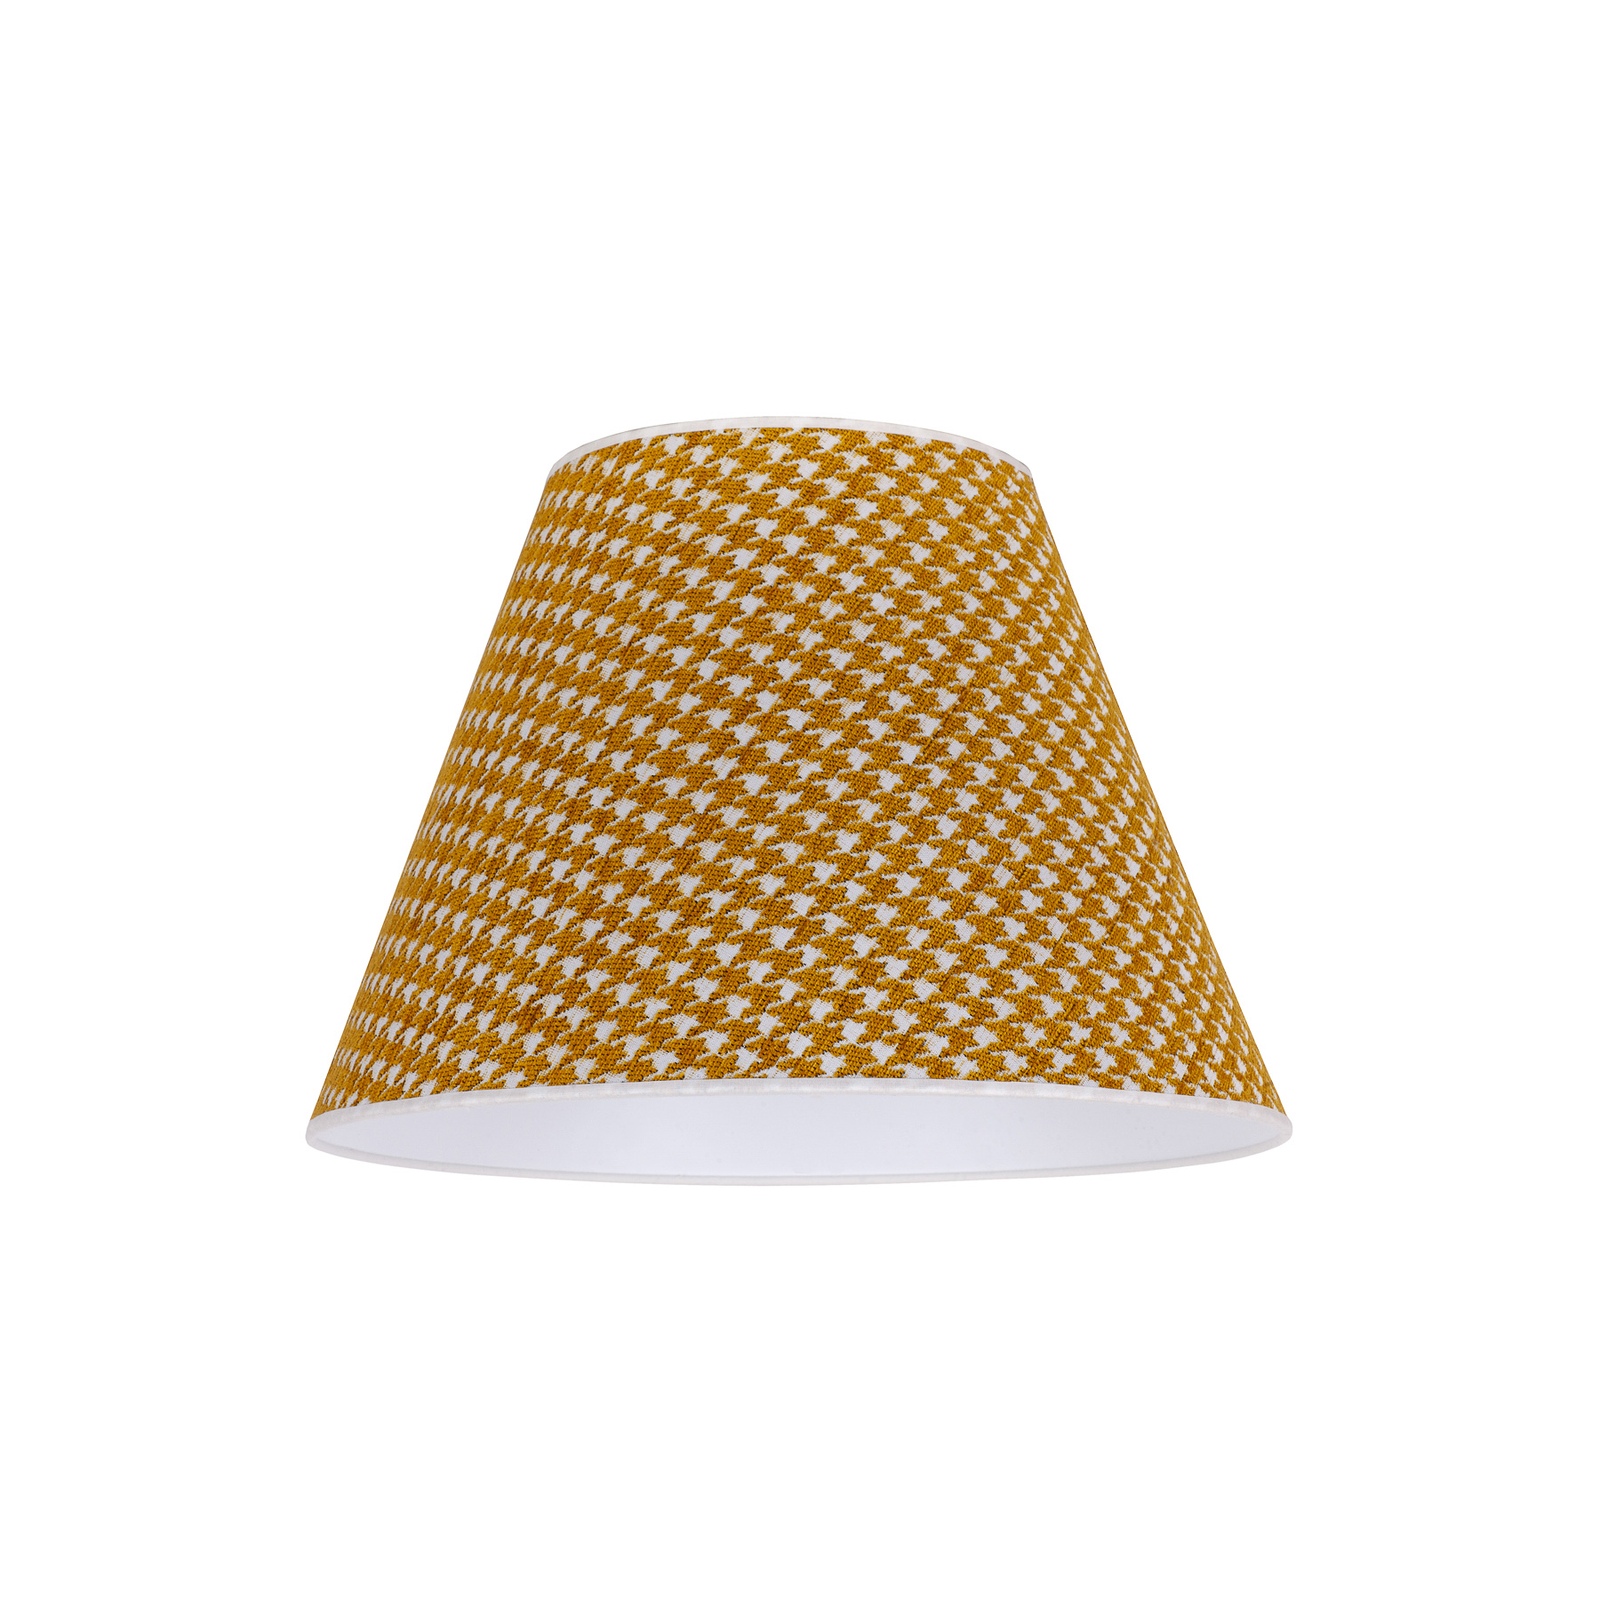 Sofia lámpaernyő 26cm, tyúklábmintás sárga